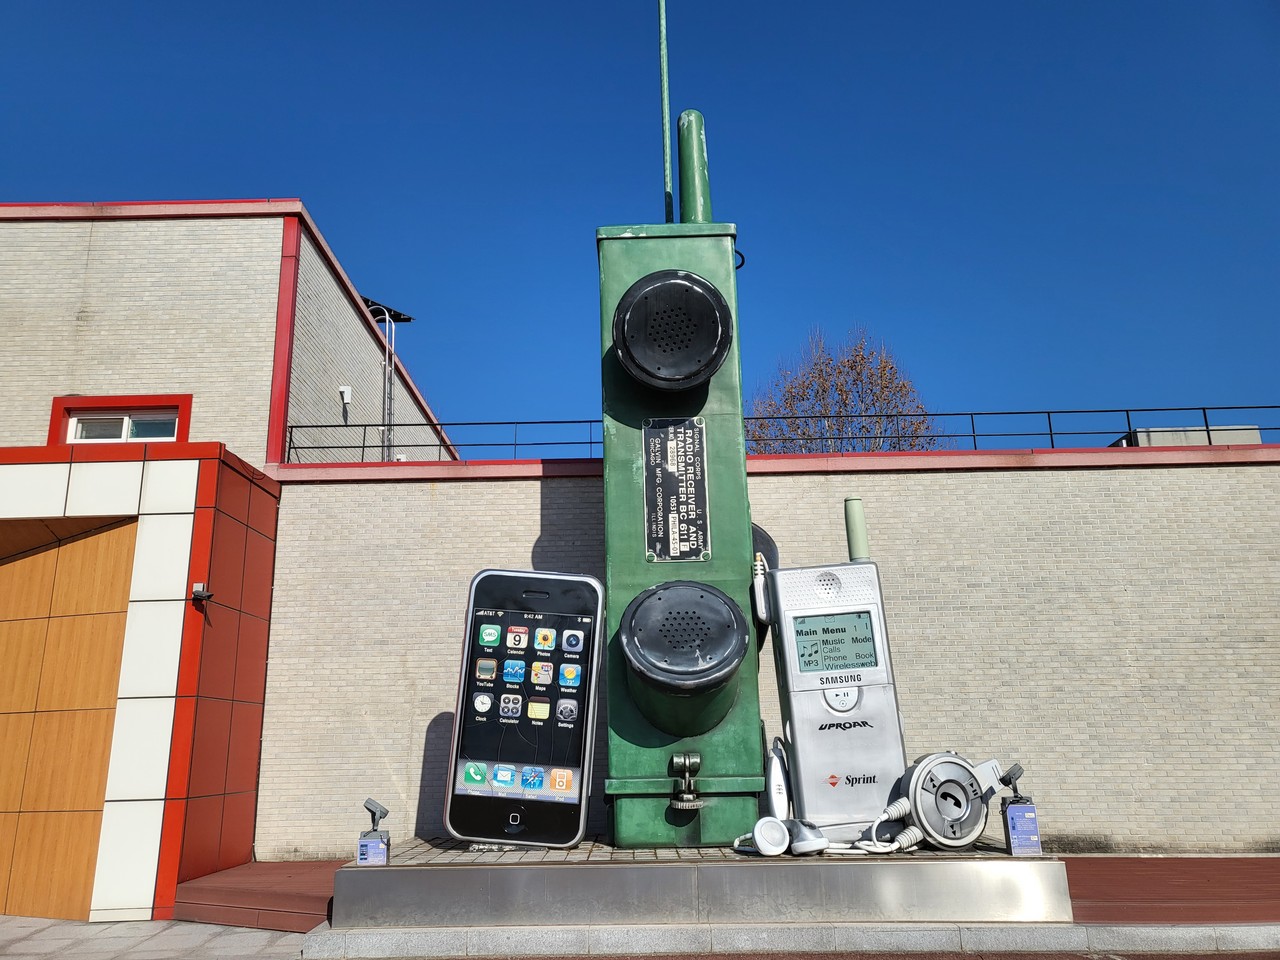 여주시립 폰박물관 앞에 안테나를 세운 거대한 벽돌폰과 왼쪽에는 아이폰, 오른쪽에는 삼성 구형폰 조형물이 크게 전시돼 있다.